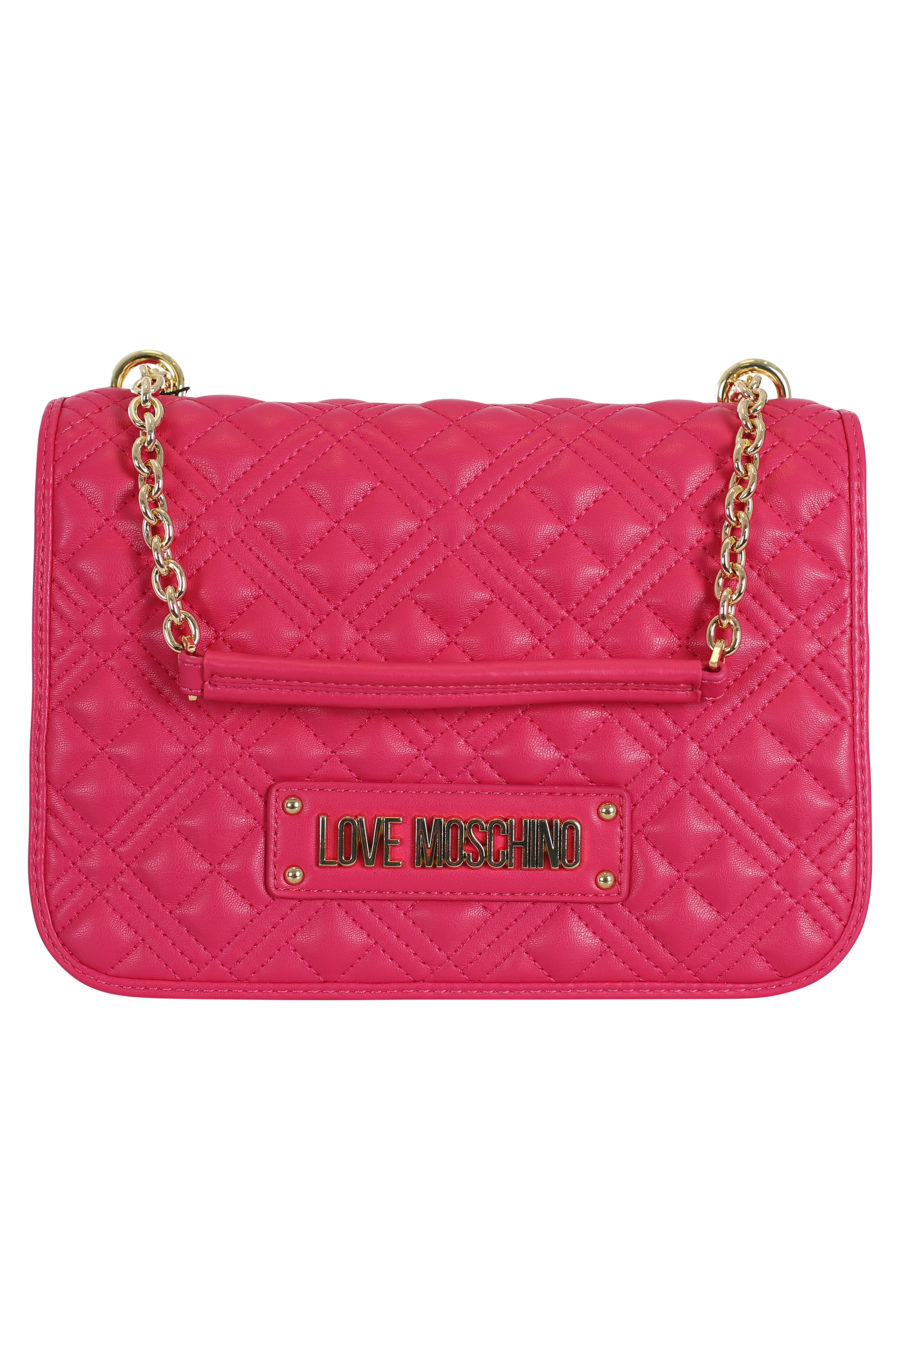 Bolso rosa acolchado con logo dorado - IMG 0076